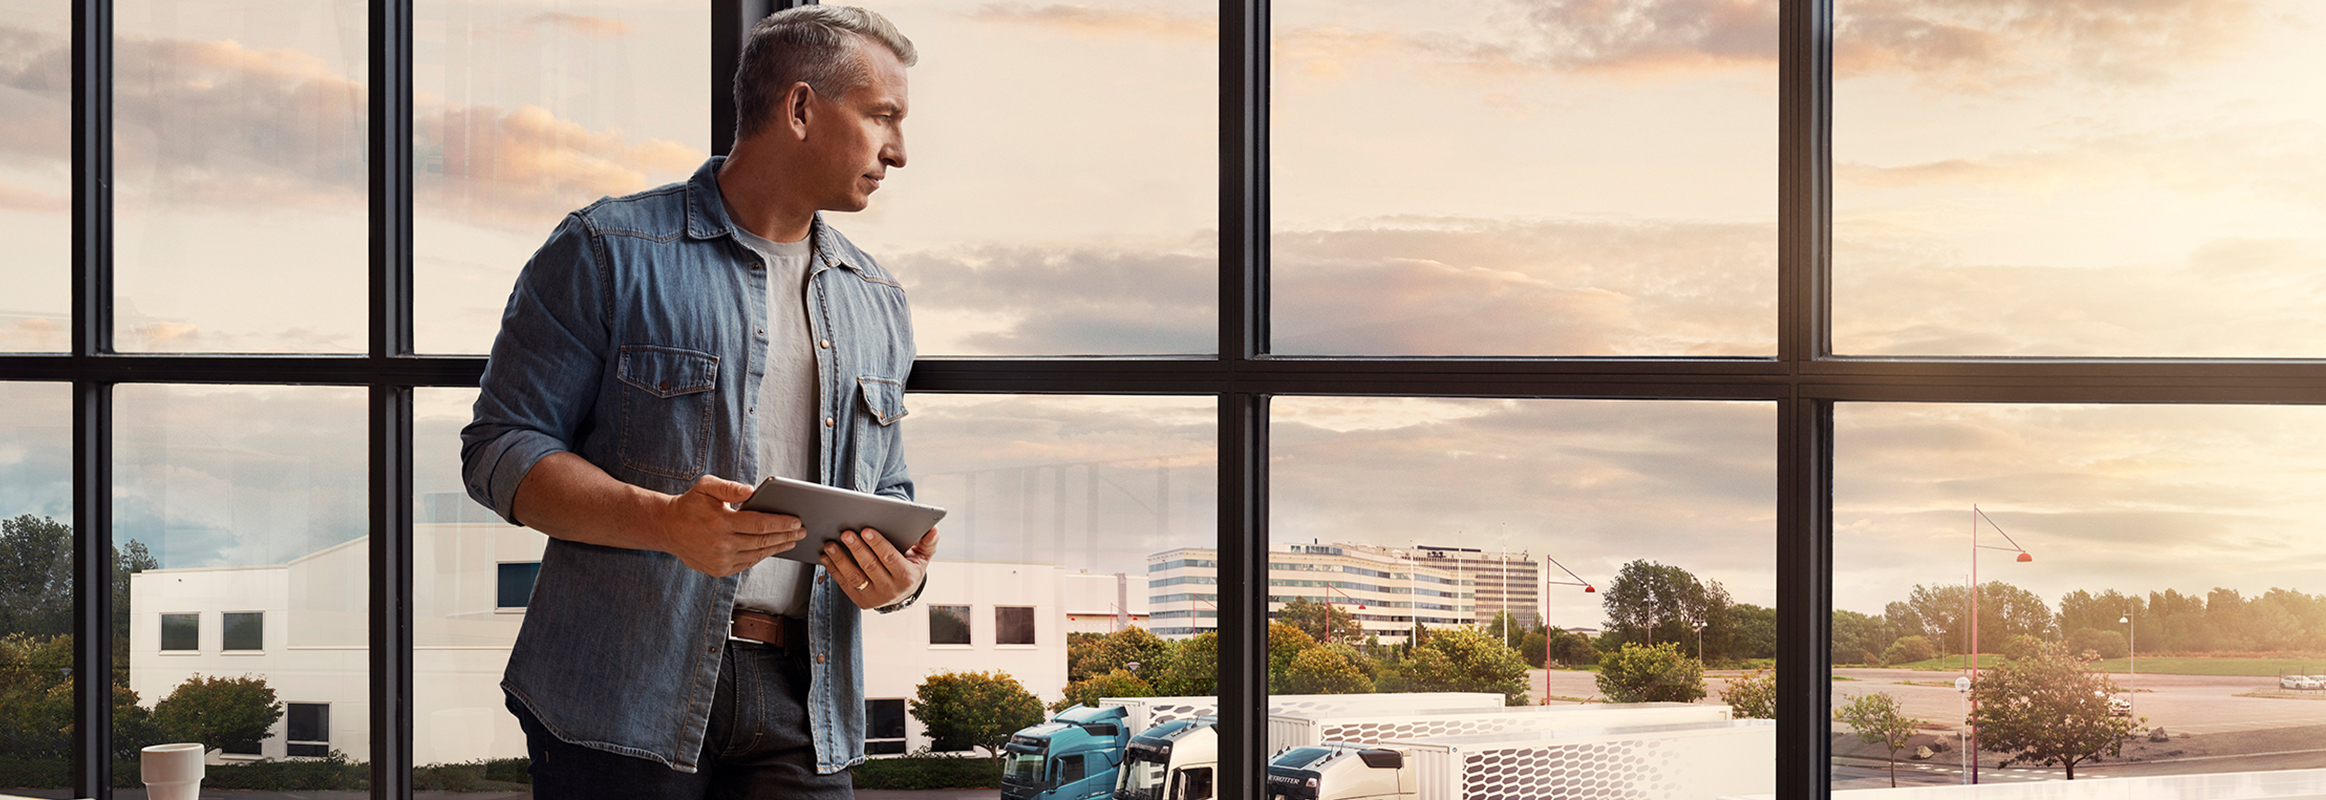 En mann som holder et nettbrett, står ved et vindu og ser ned mot lastebilparken sin